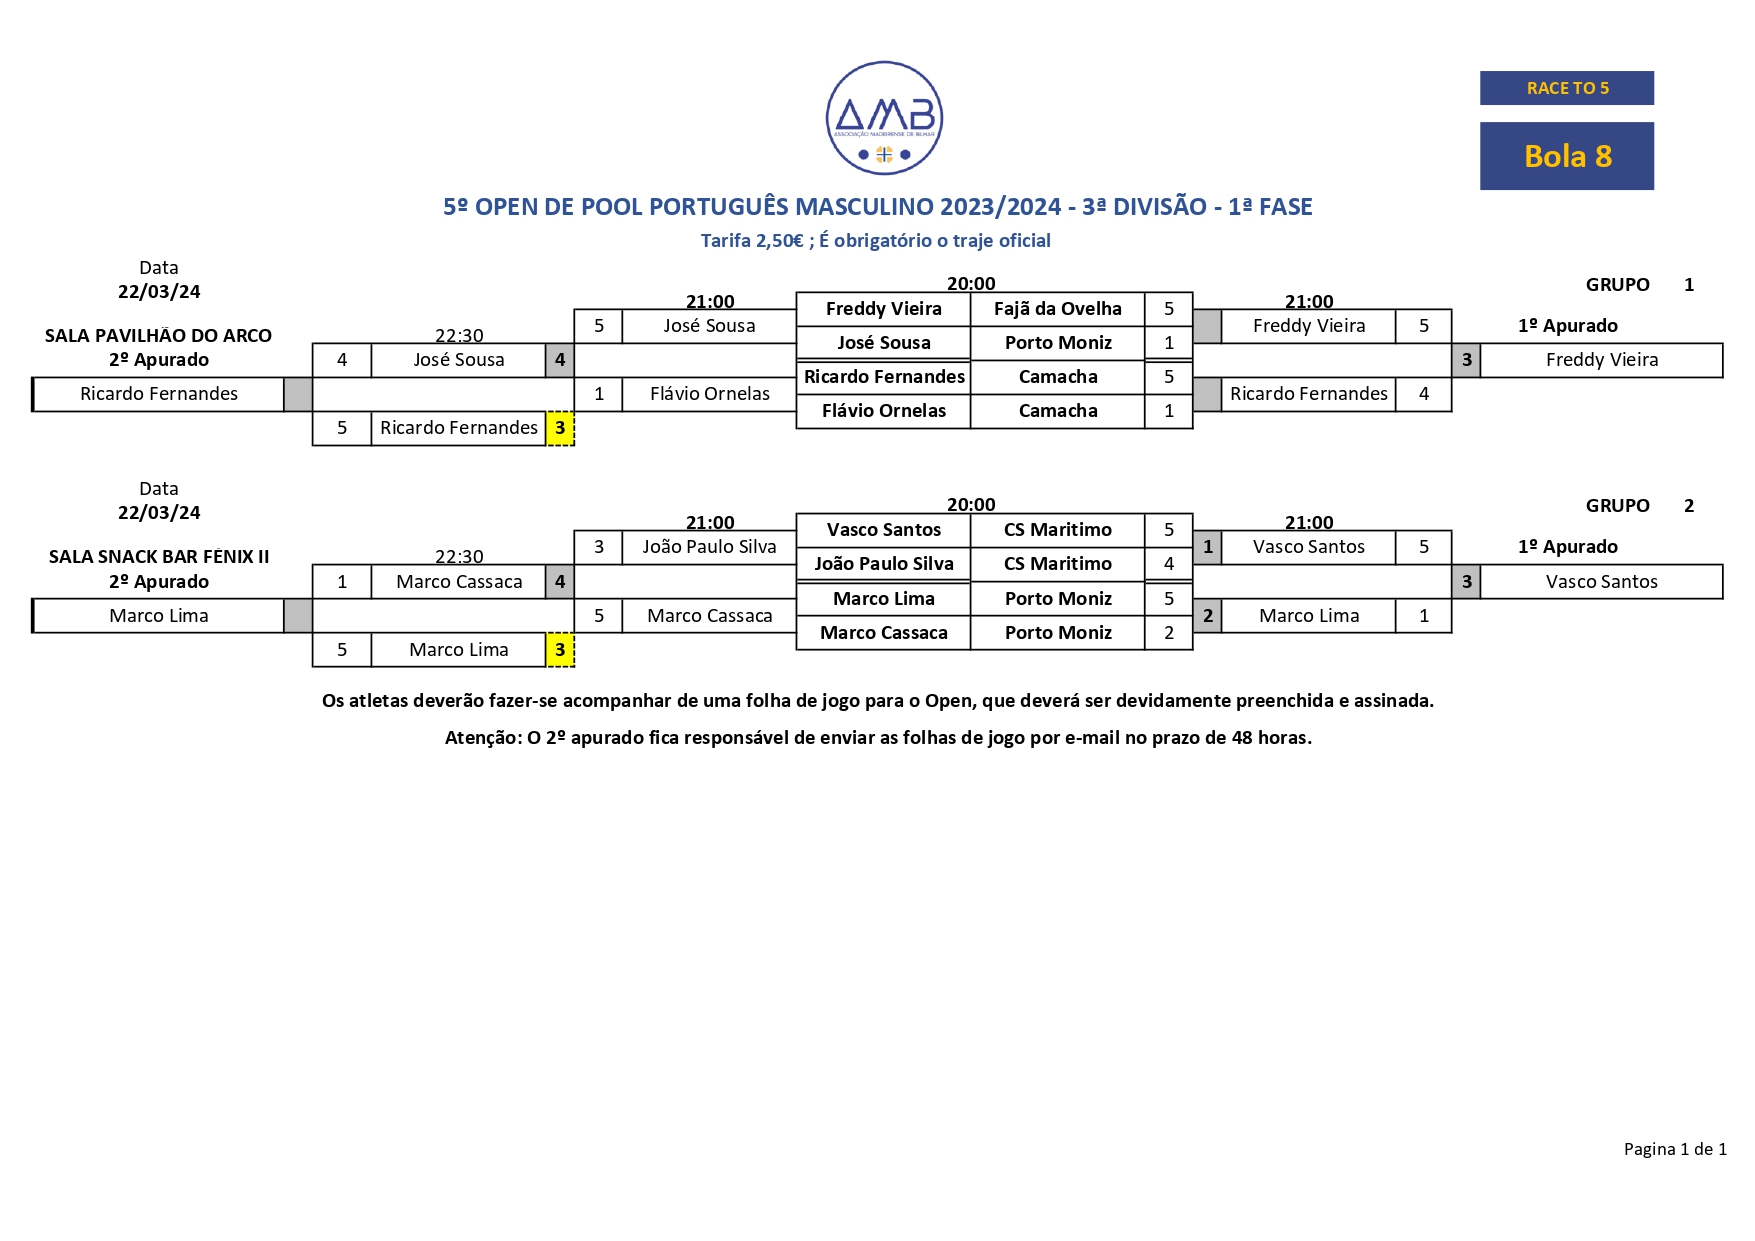 5º Open Individual de POOL PORTUGUÊS MASCULINO 2023-2024 - 3ª Divisão 1 fase